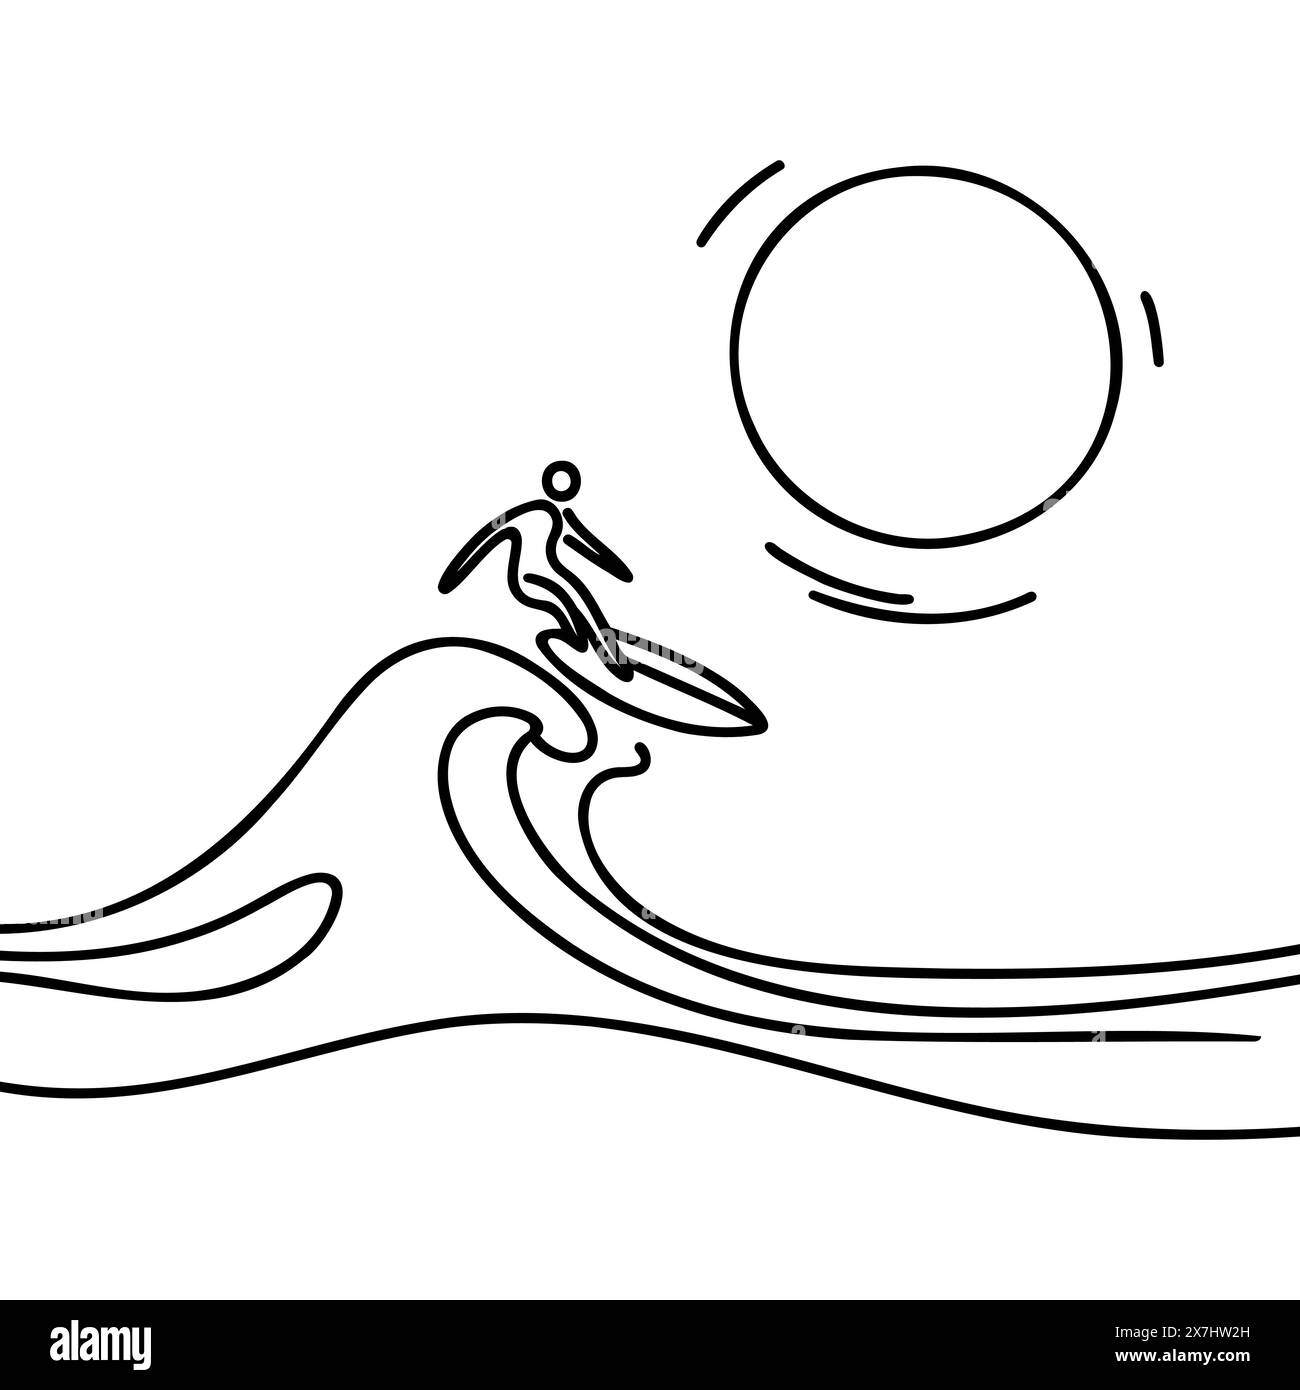 Linea singola continua che disegna il surfista in azione cavalcando le onde. Concetto di sport acquatici. Vacanze estive Illustrazione Vettoriale